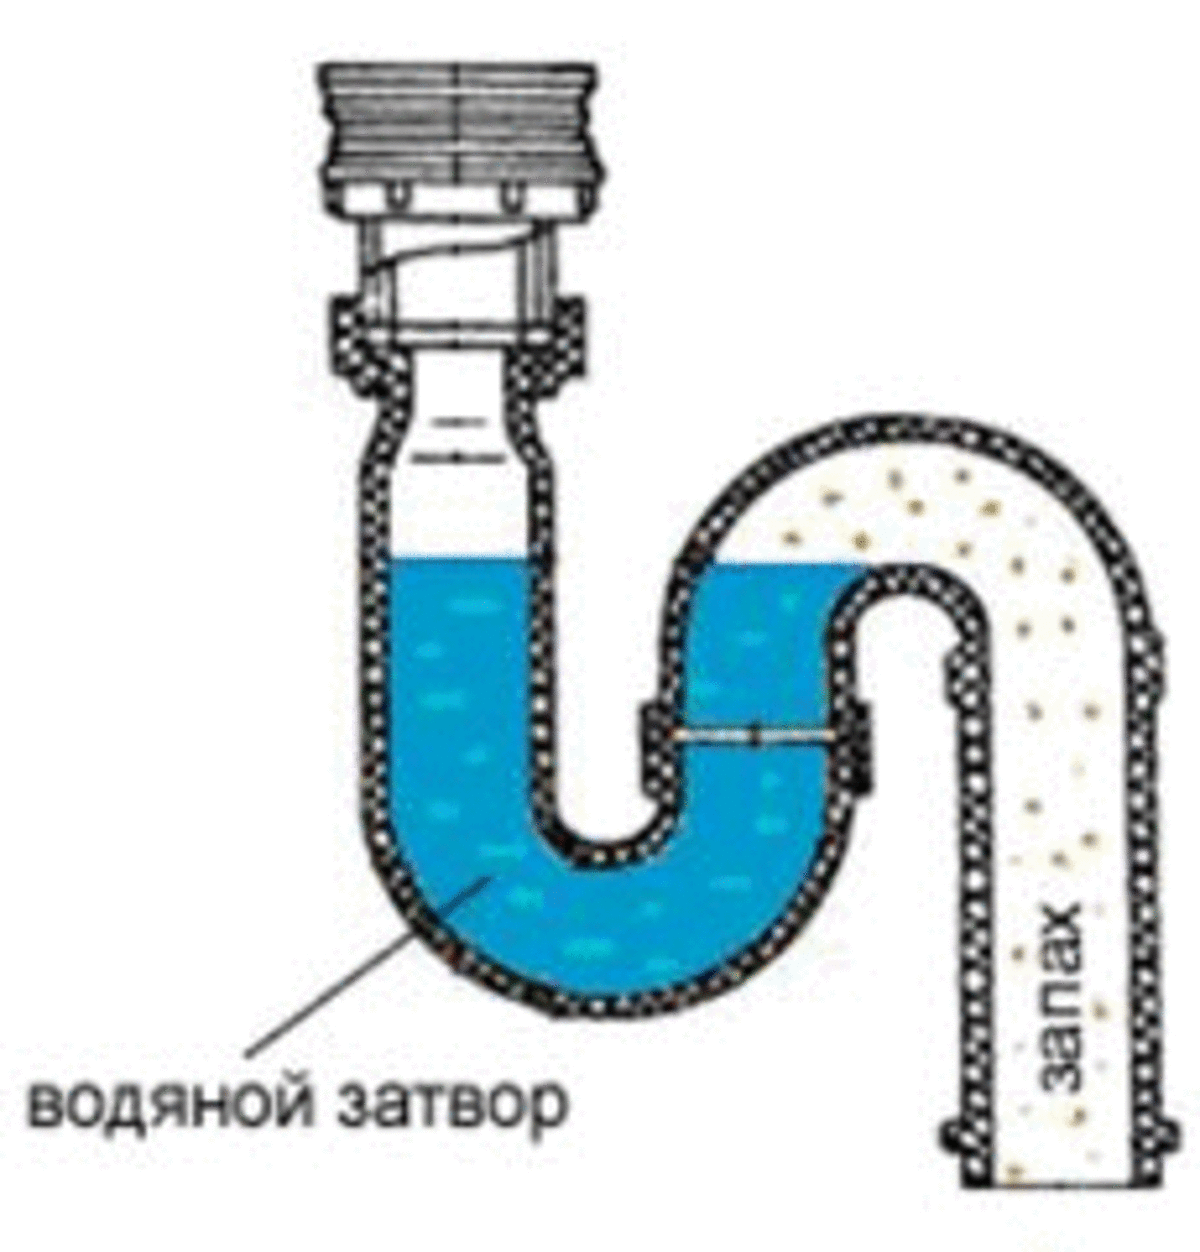 Гидрозатвор для канализации - гарантированная защита от неприятных запахов